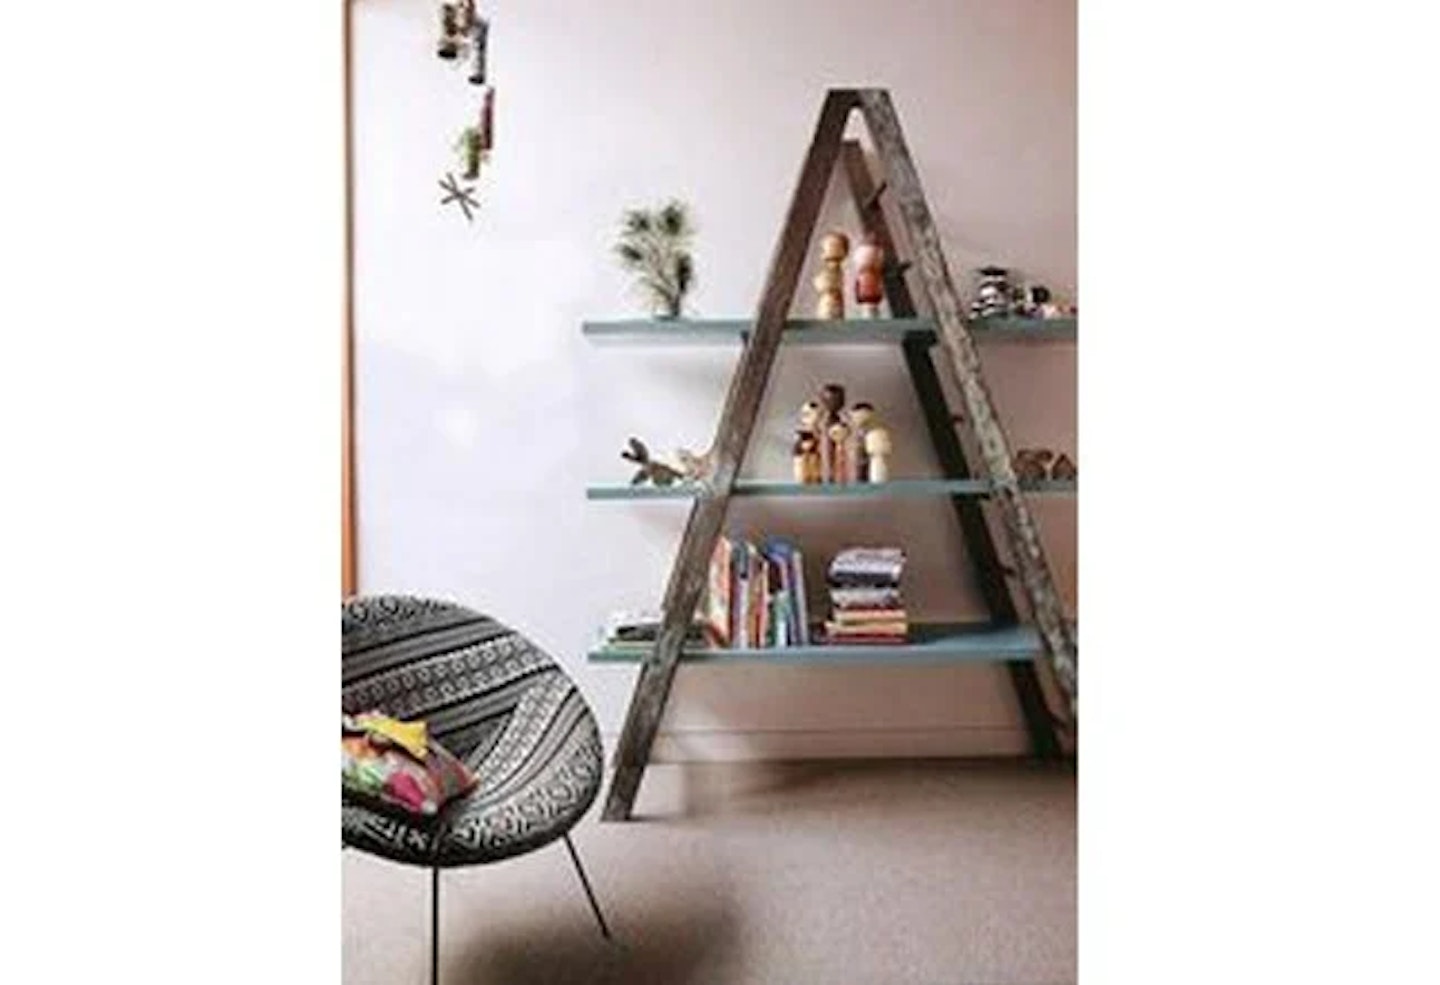 Ladder as a bookshelf